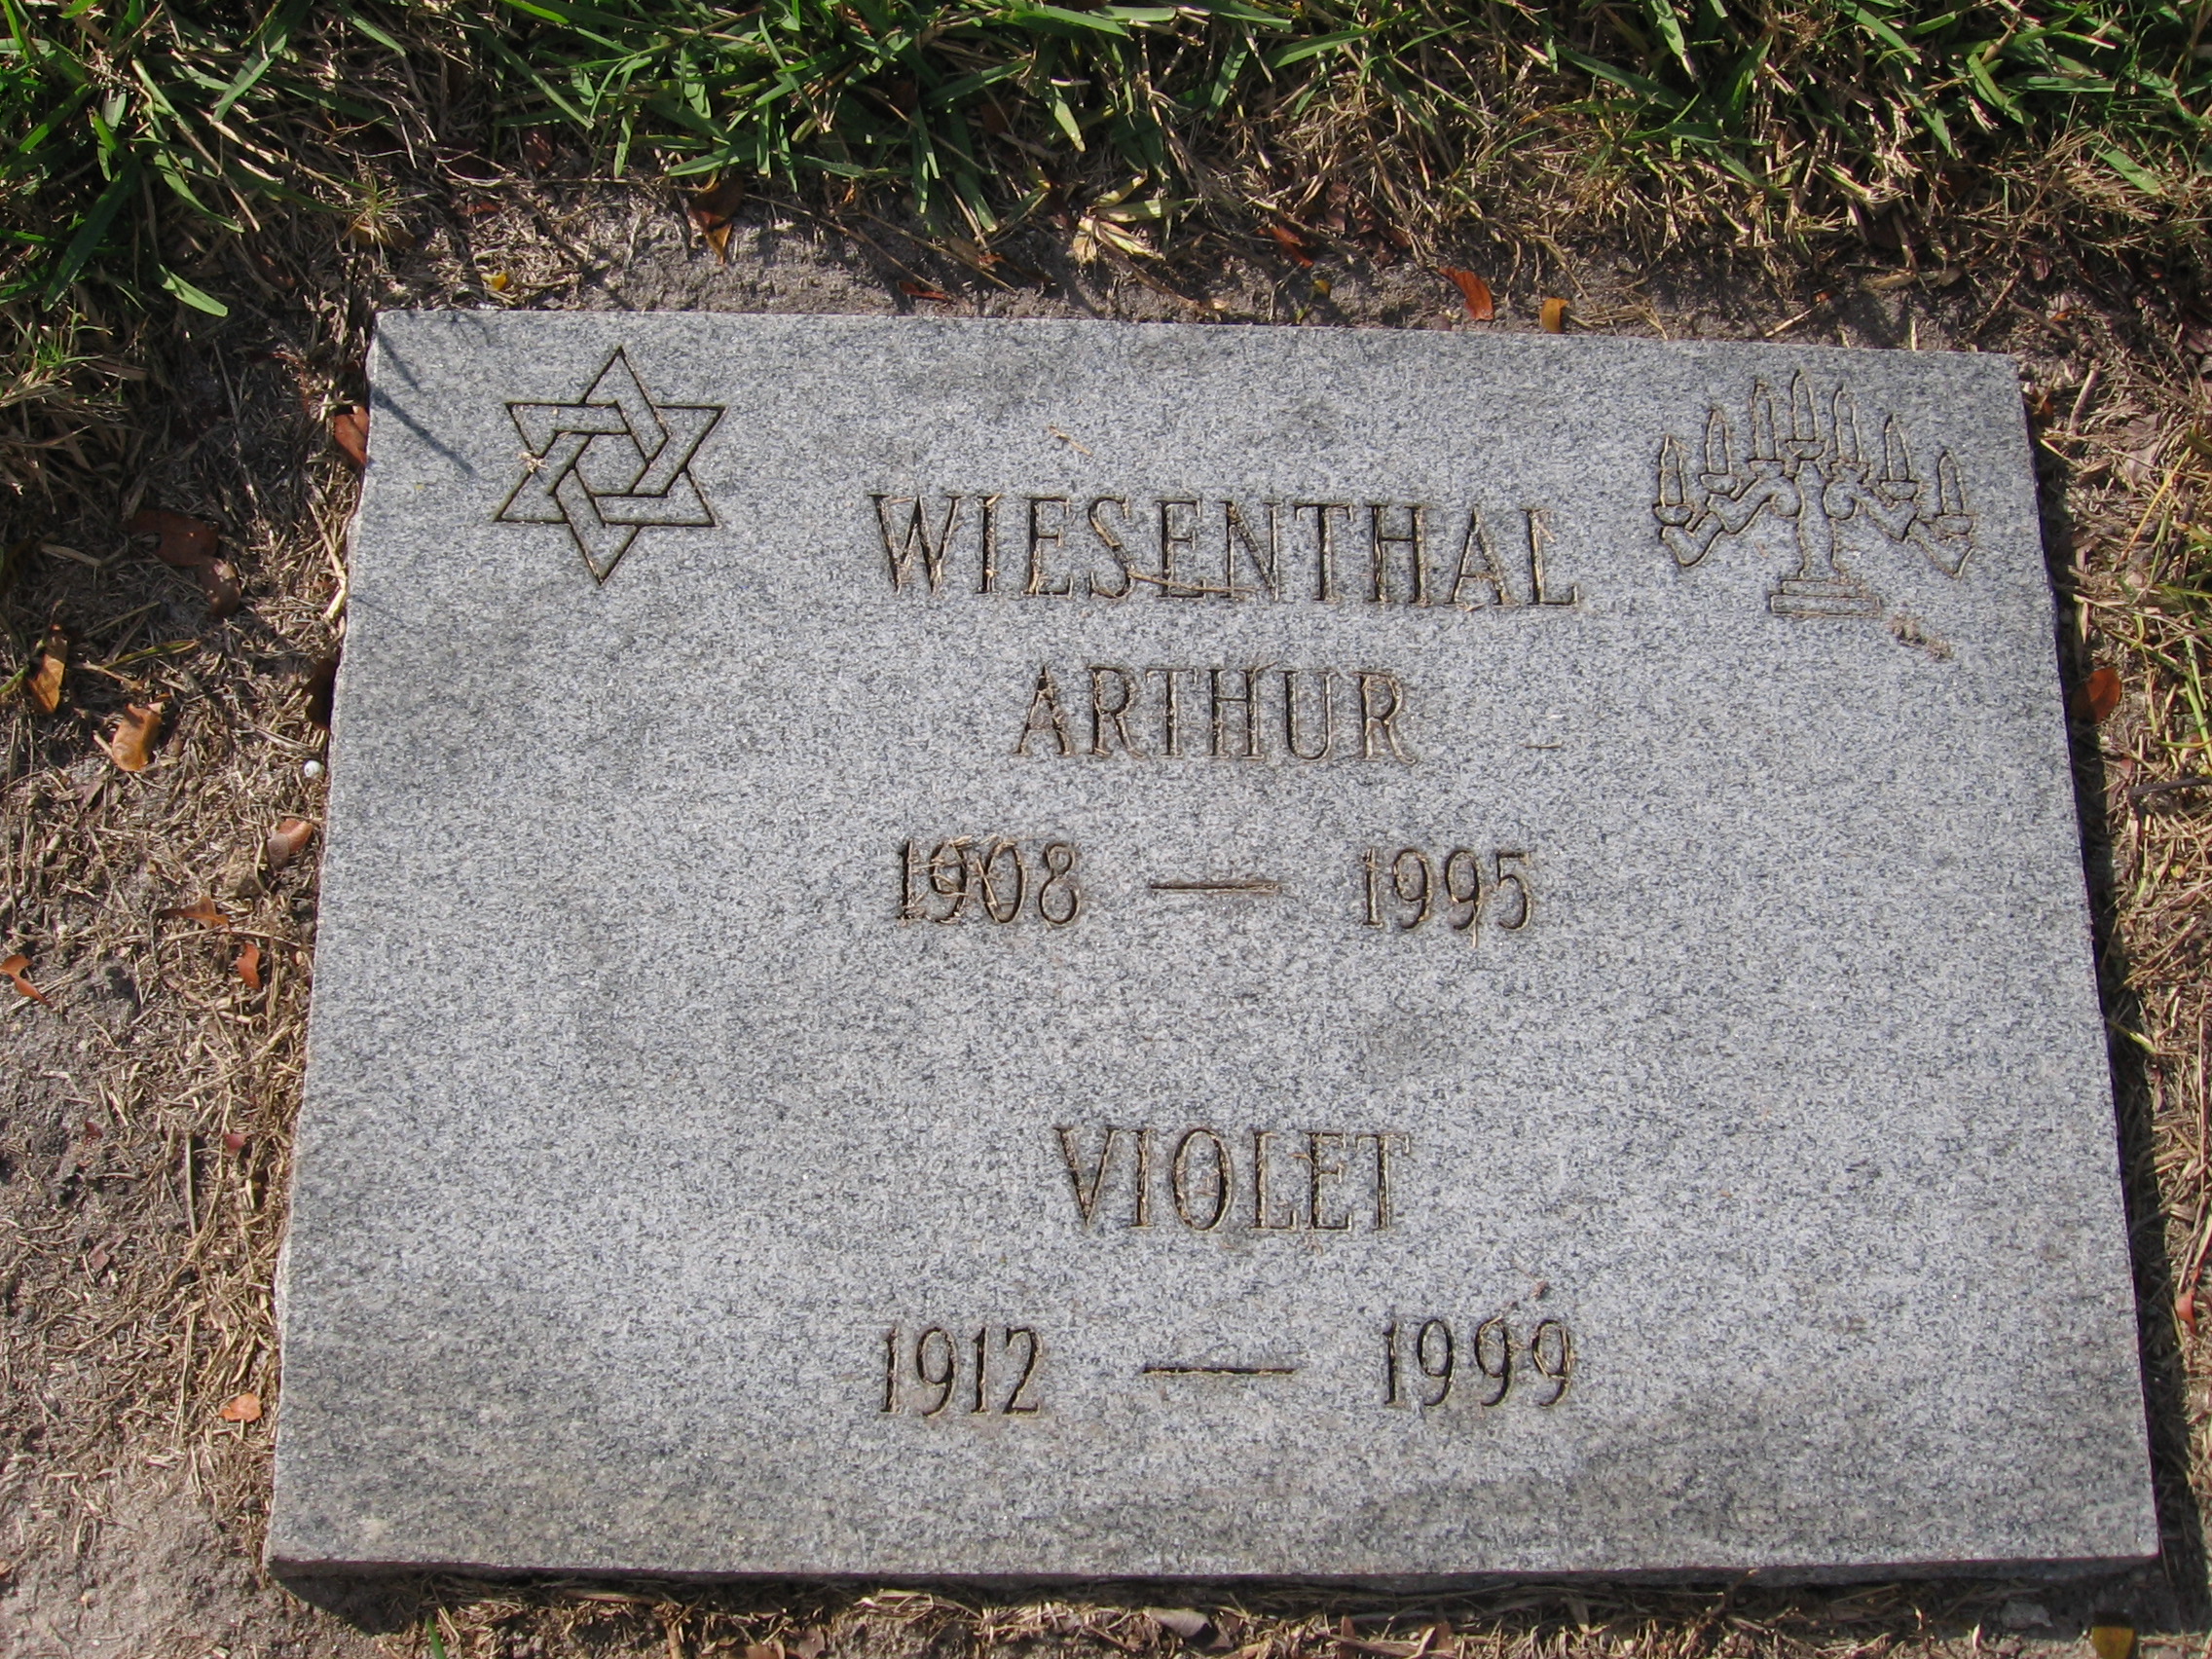 Arthur Wiesenthal